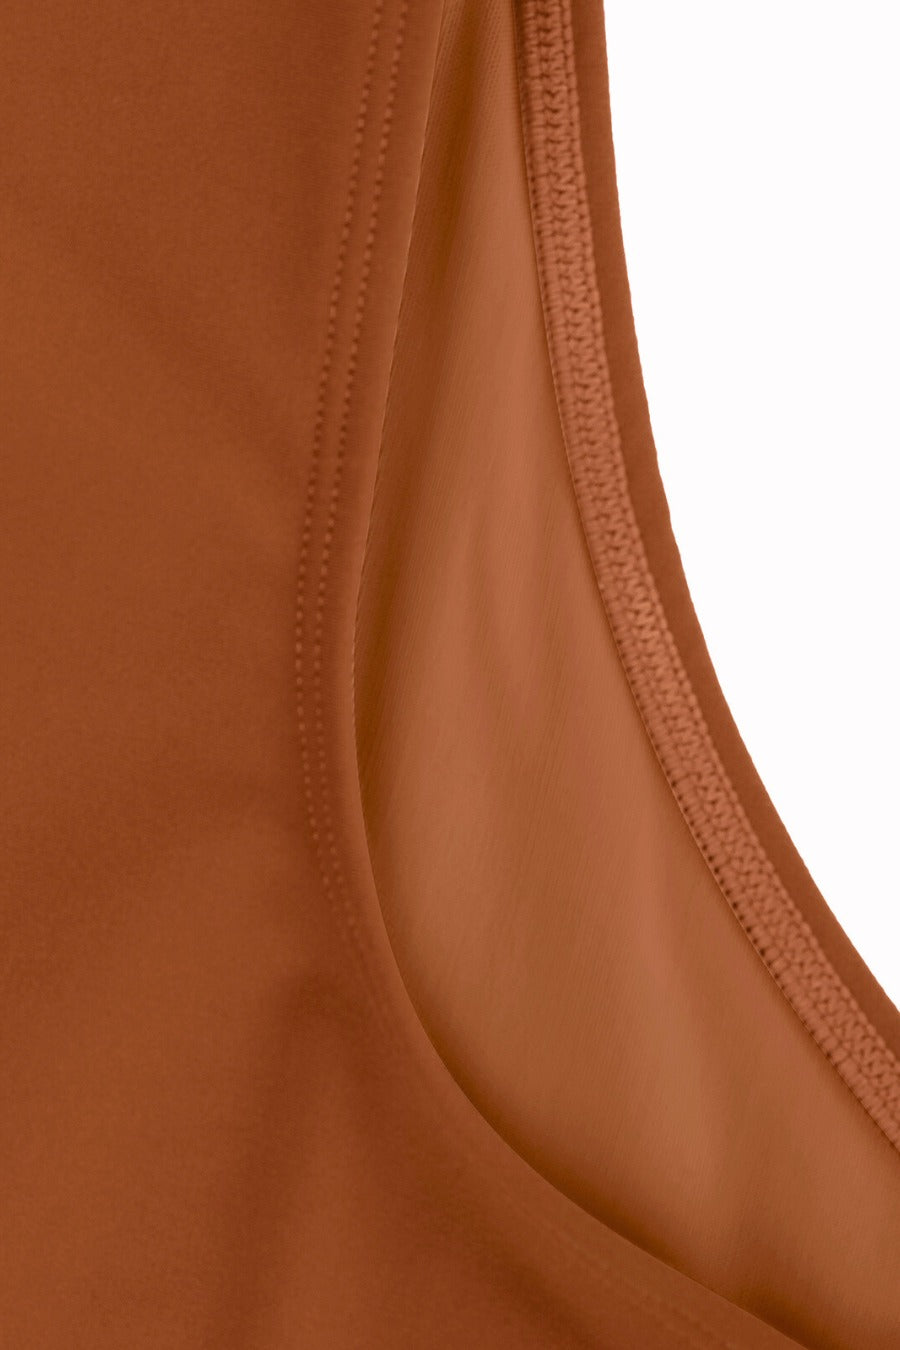 Sydney Shaping Bodysuit - Caramel Contour Clothing